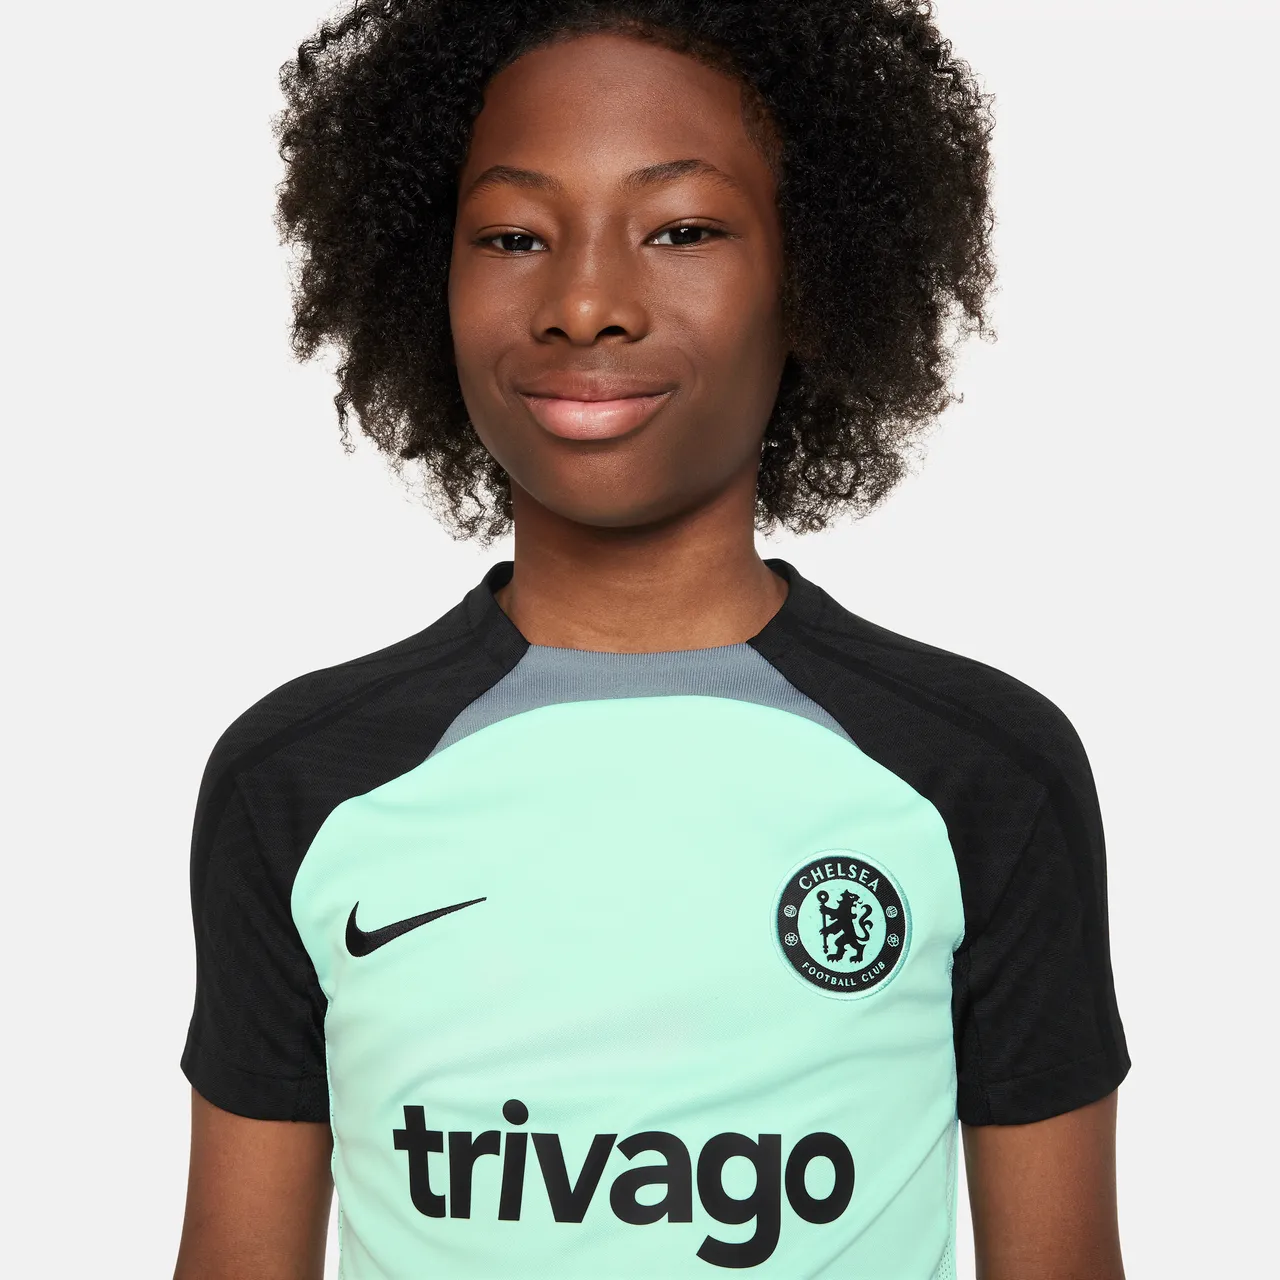 Chelsea FC Strike Derde Nike Dri-FIT knit voetbaltop met korte mouwen voor kids - Groen